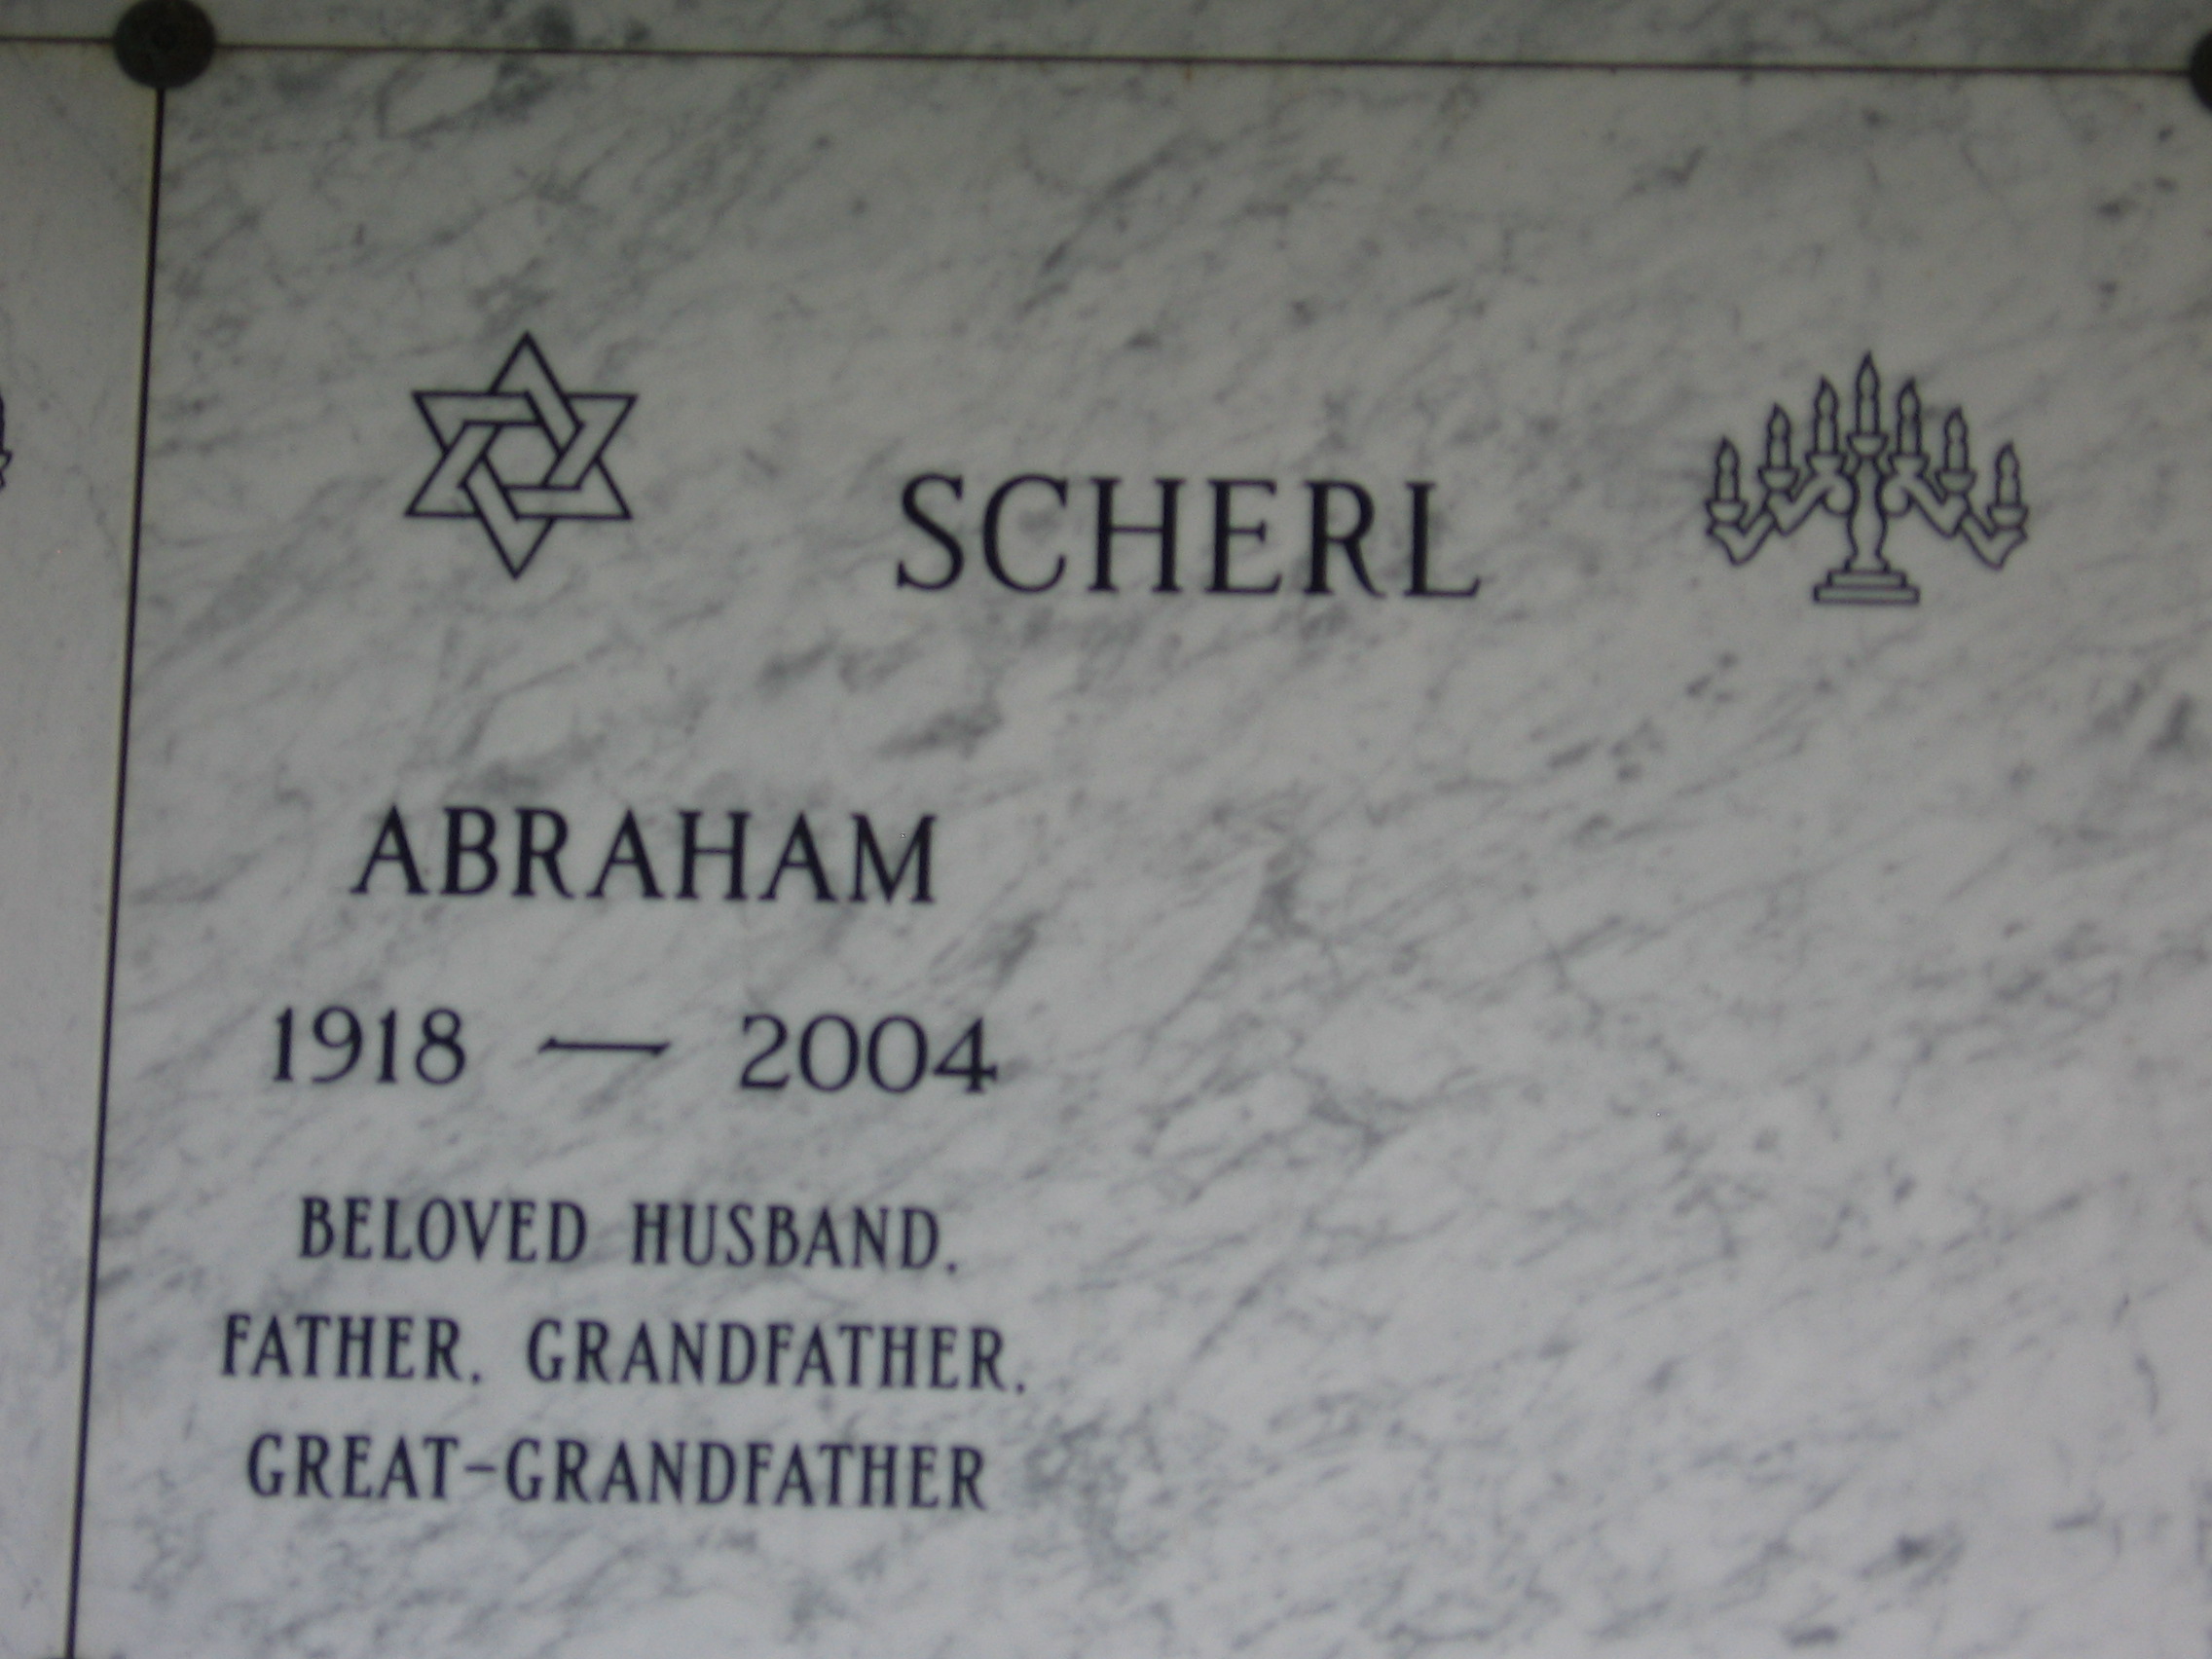 Abraham Scherl